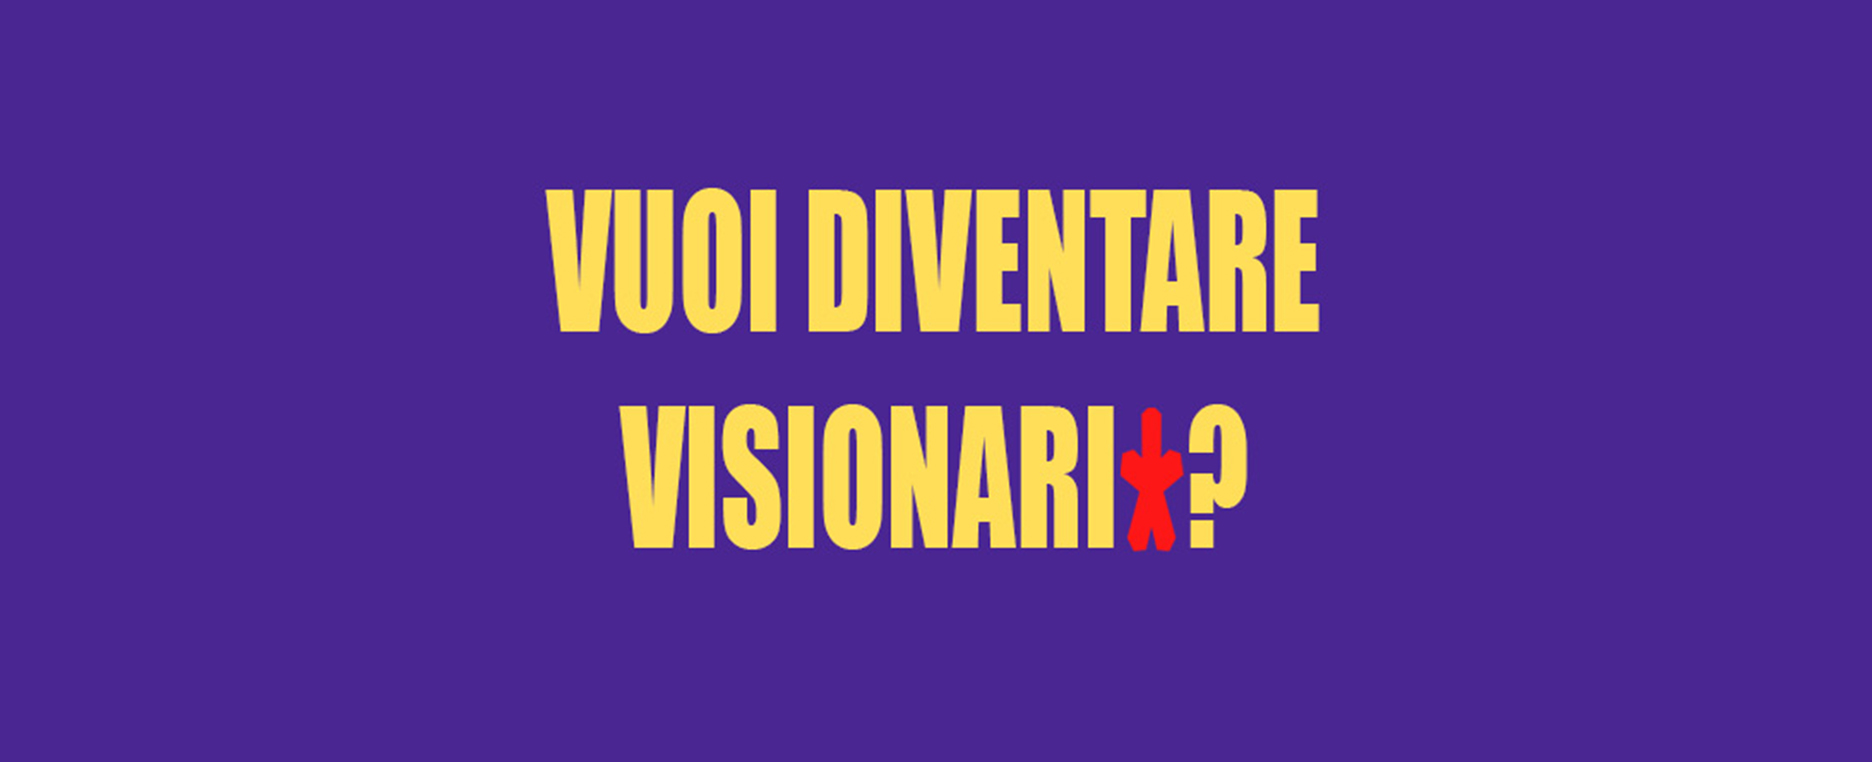 call Visionari - edizione 2021-2022